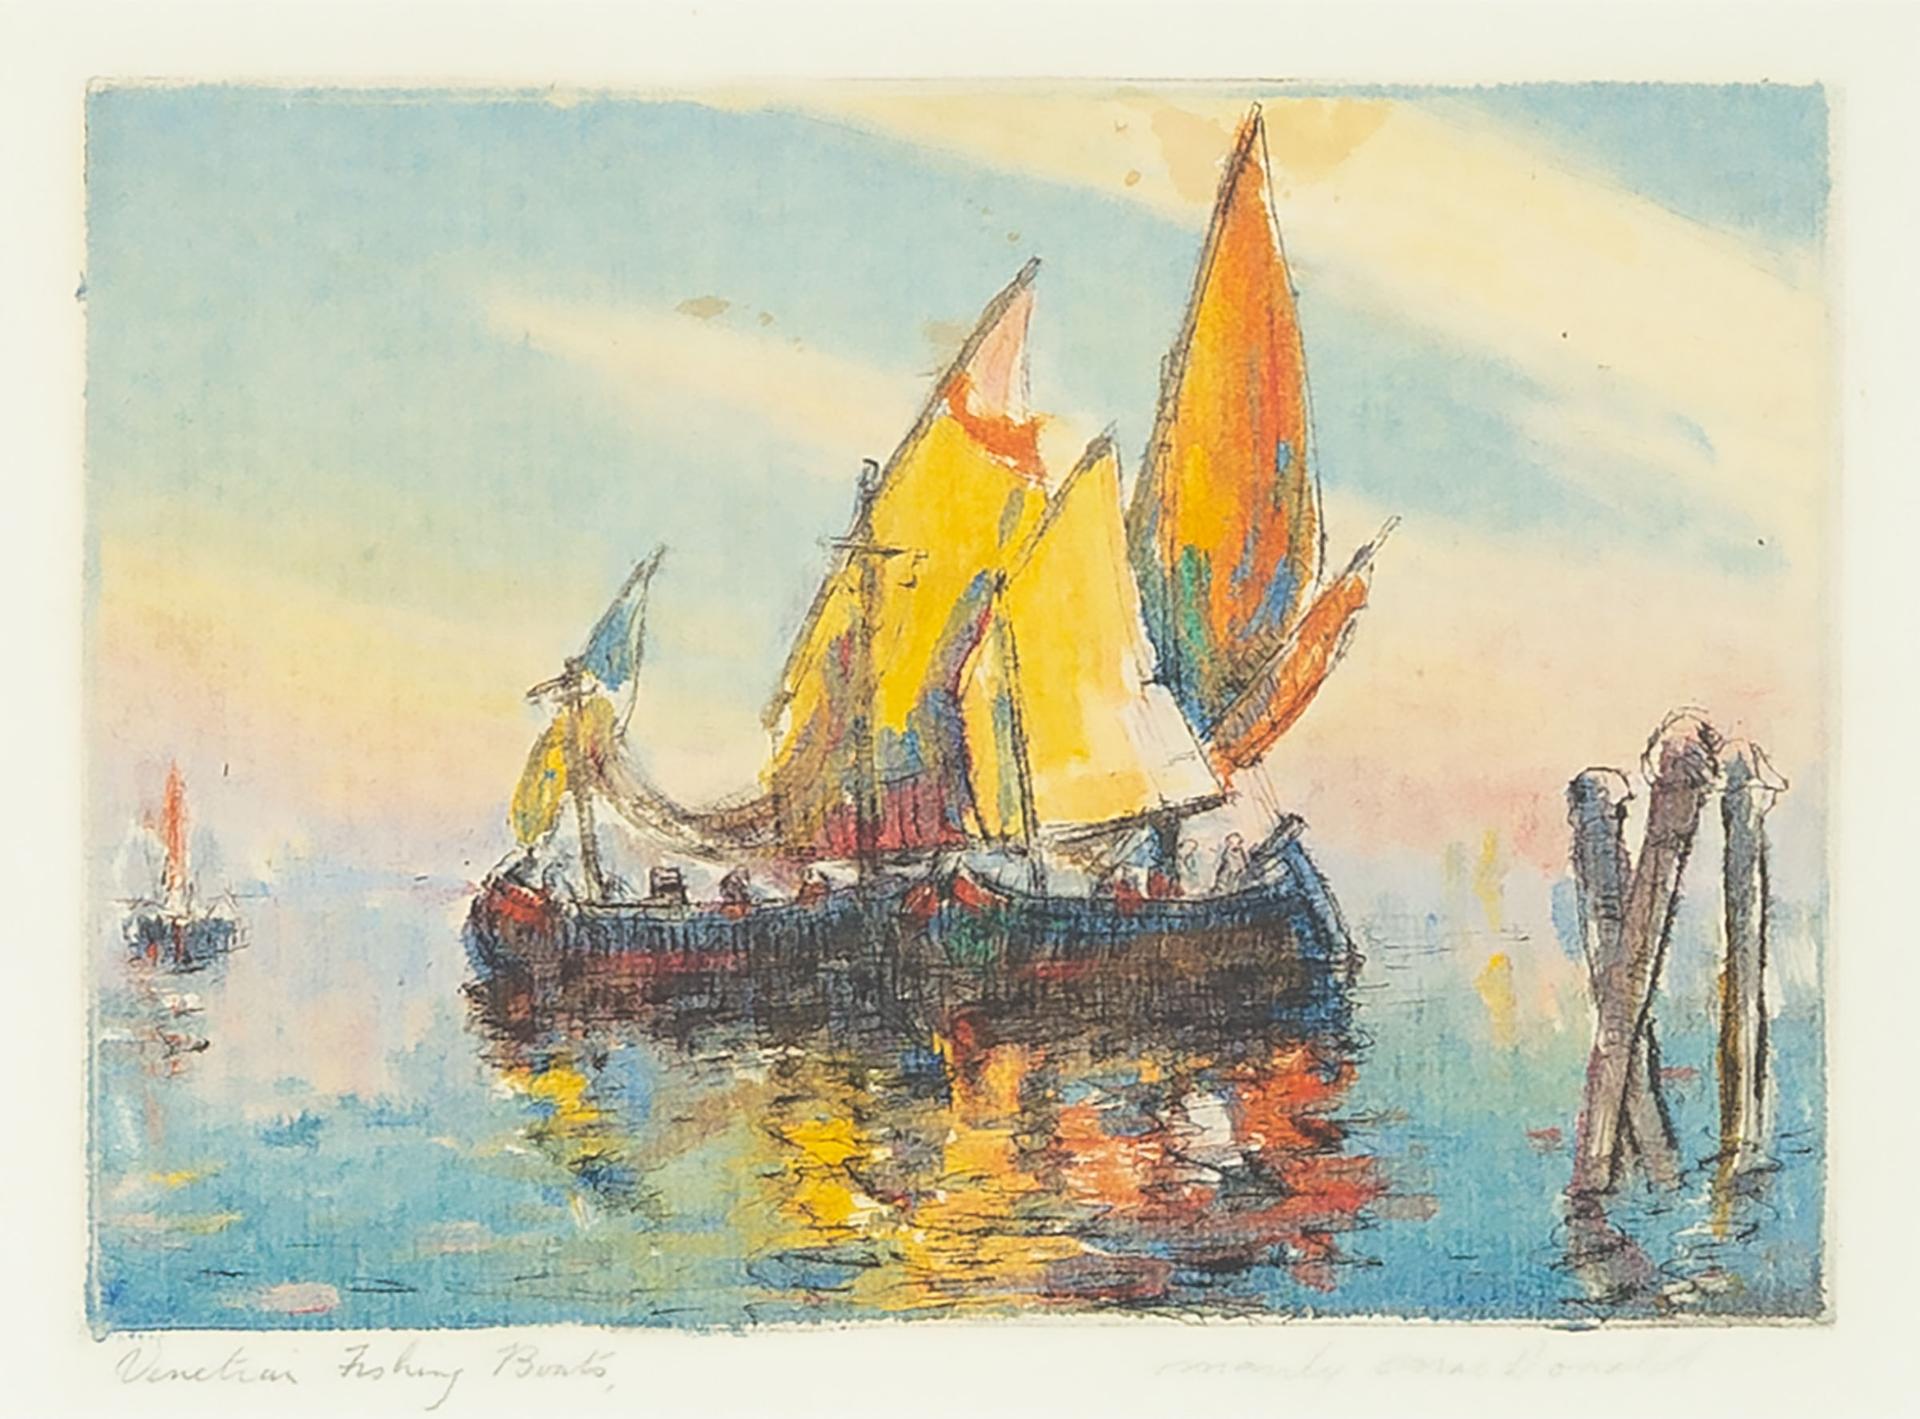 Manly Edward MacDonald (1889-1971) - Venetian Fishing Boats